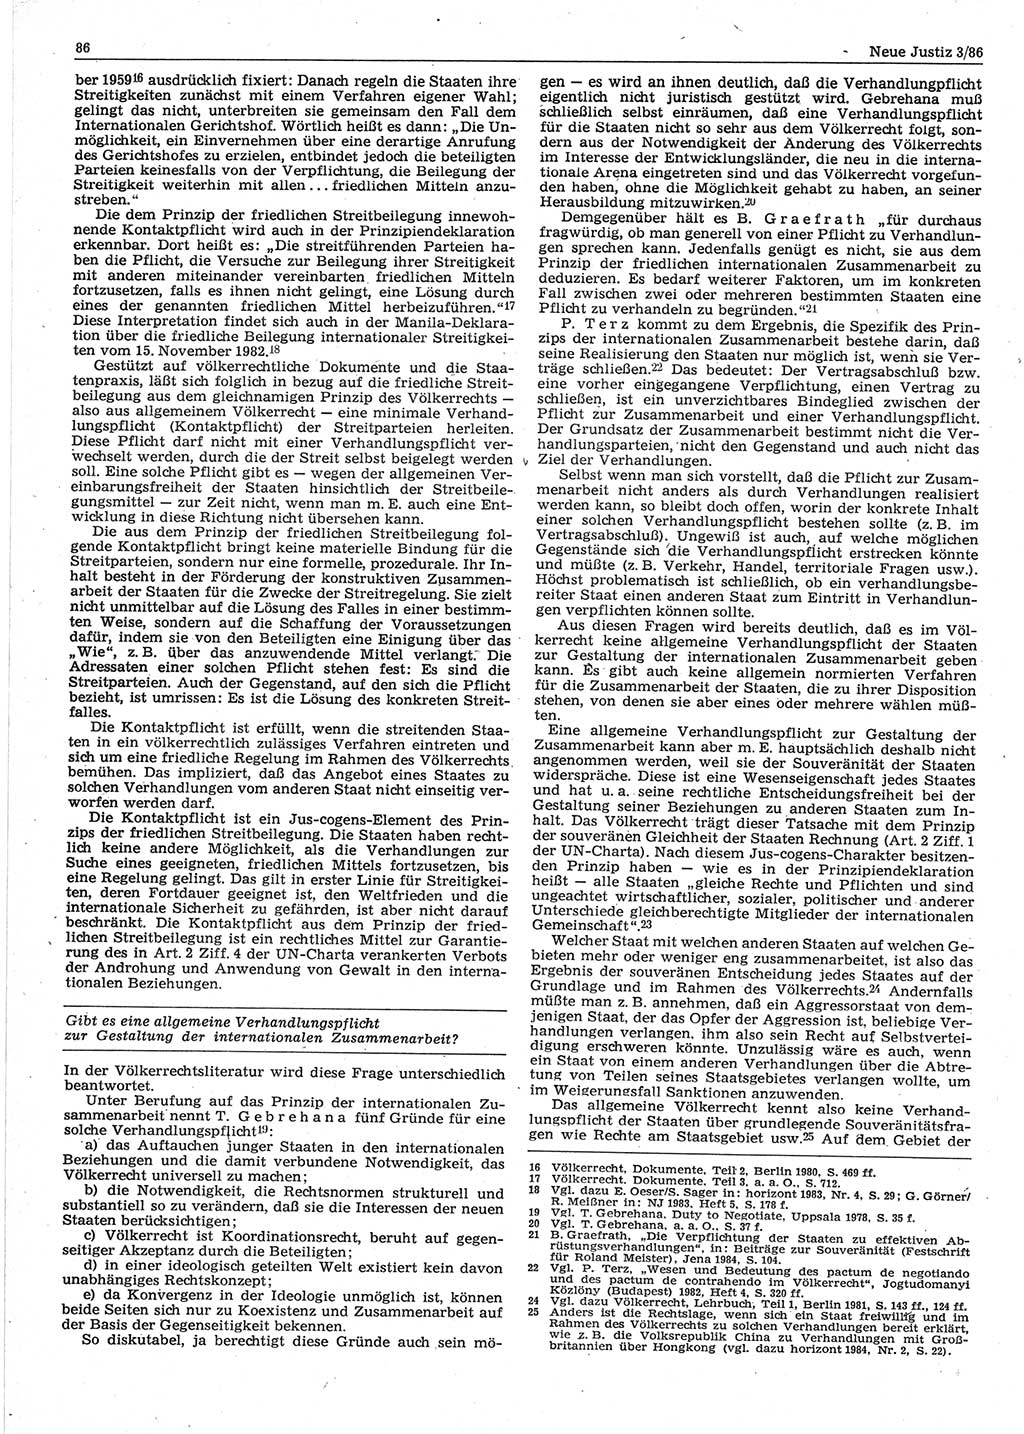 Neue Justiz (NJ), Zeitschrift für sozialistisches Recht und Gesetzlichkeit [Deutsche Demokratische Republik (DDR)], 40. Jahrgang 1986, Seite 86 (NJ DDR 1986, S. 86)